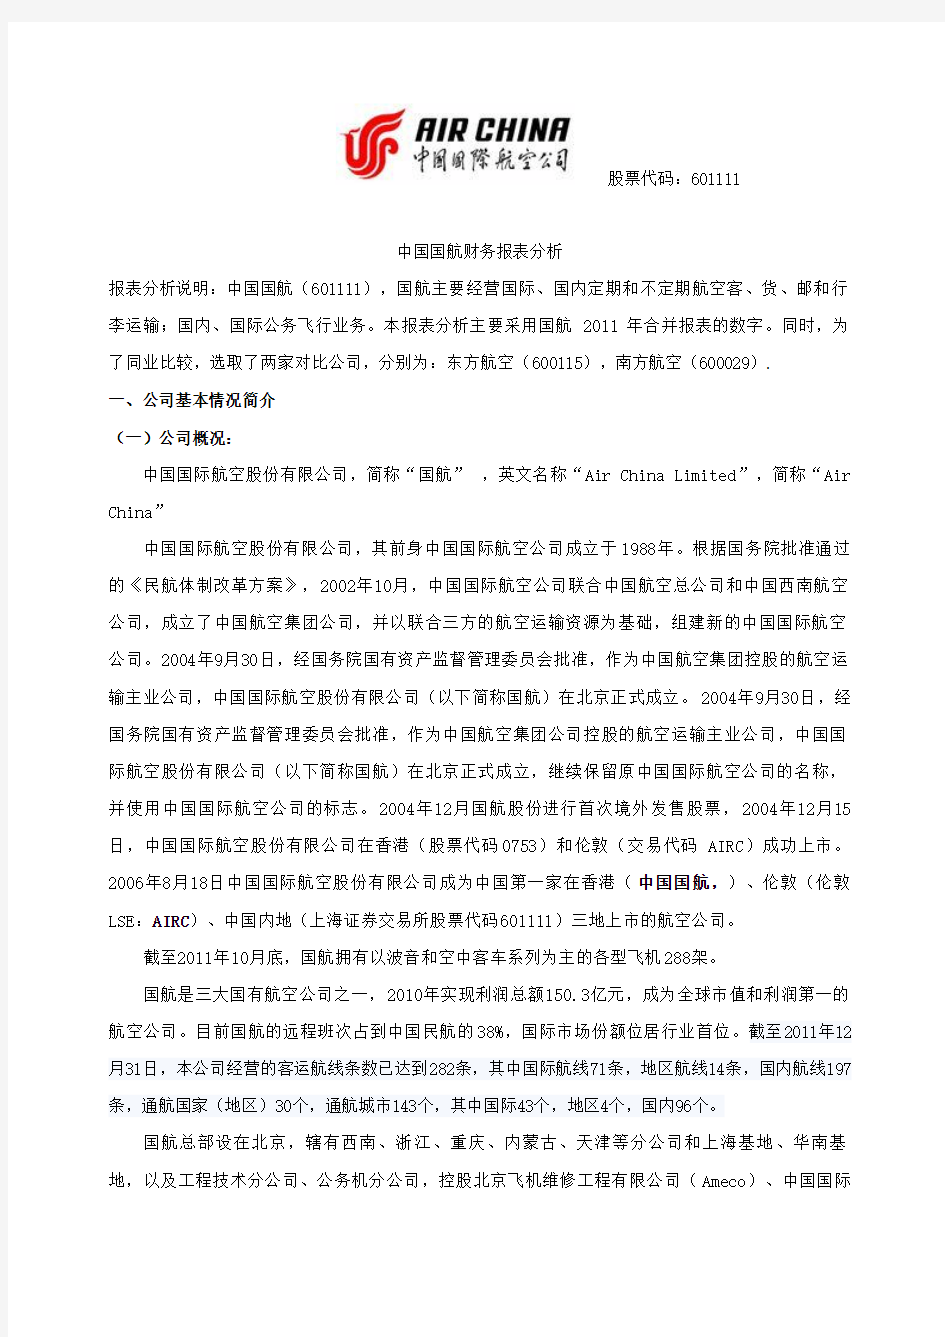 【财务报表】中国国航财务报表分析案例(doc 43页)